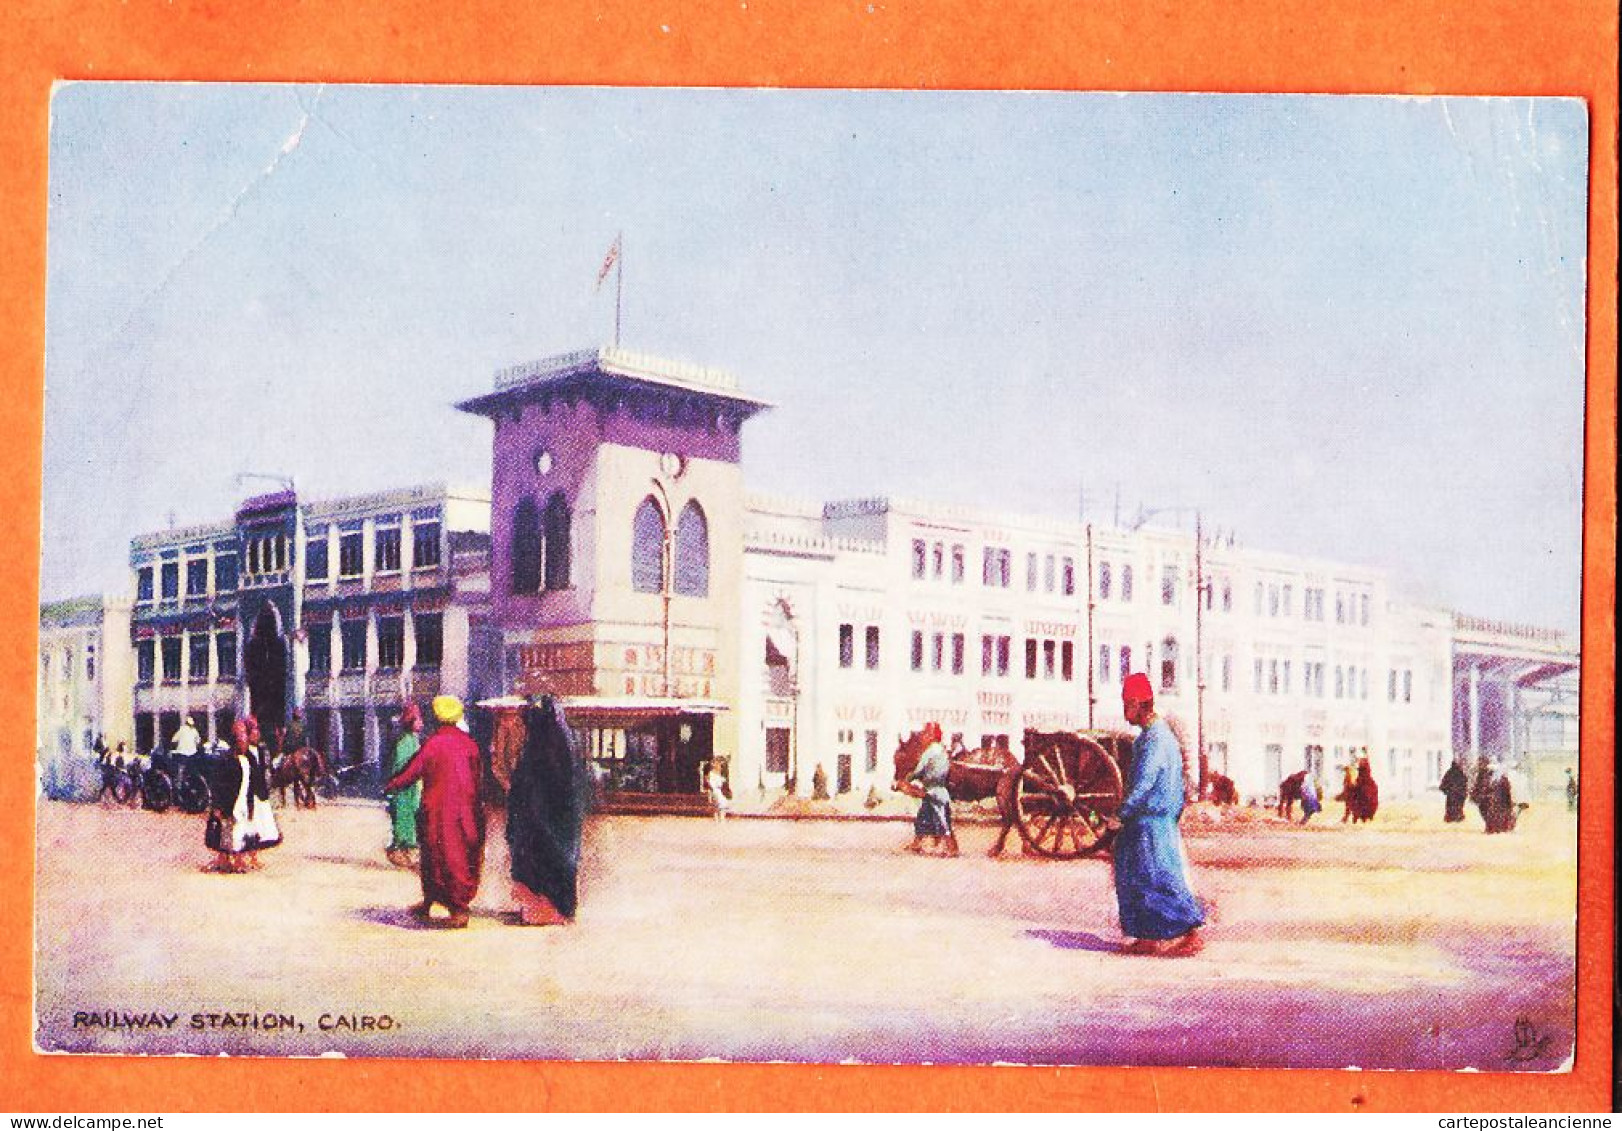 09974 / ⭐ Lithographie OILETTE Egypte ◉ CAIRO Railway Station LE CAIRE Gare 1905s ◉ RAPHAEL TUCK Egyptian Gazette  N°6 - Le Caire